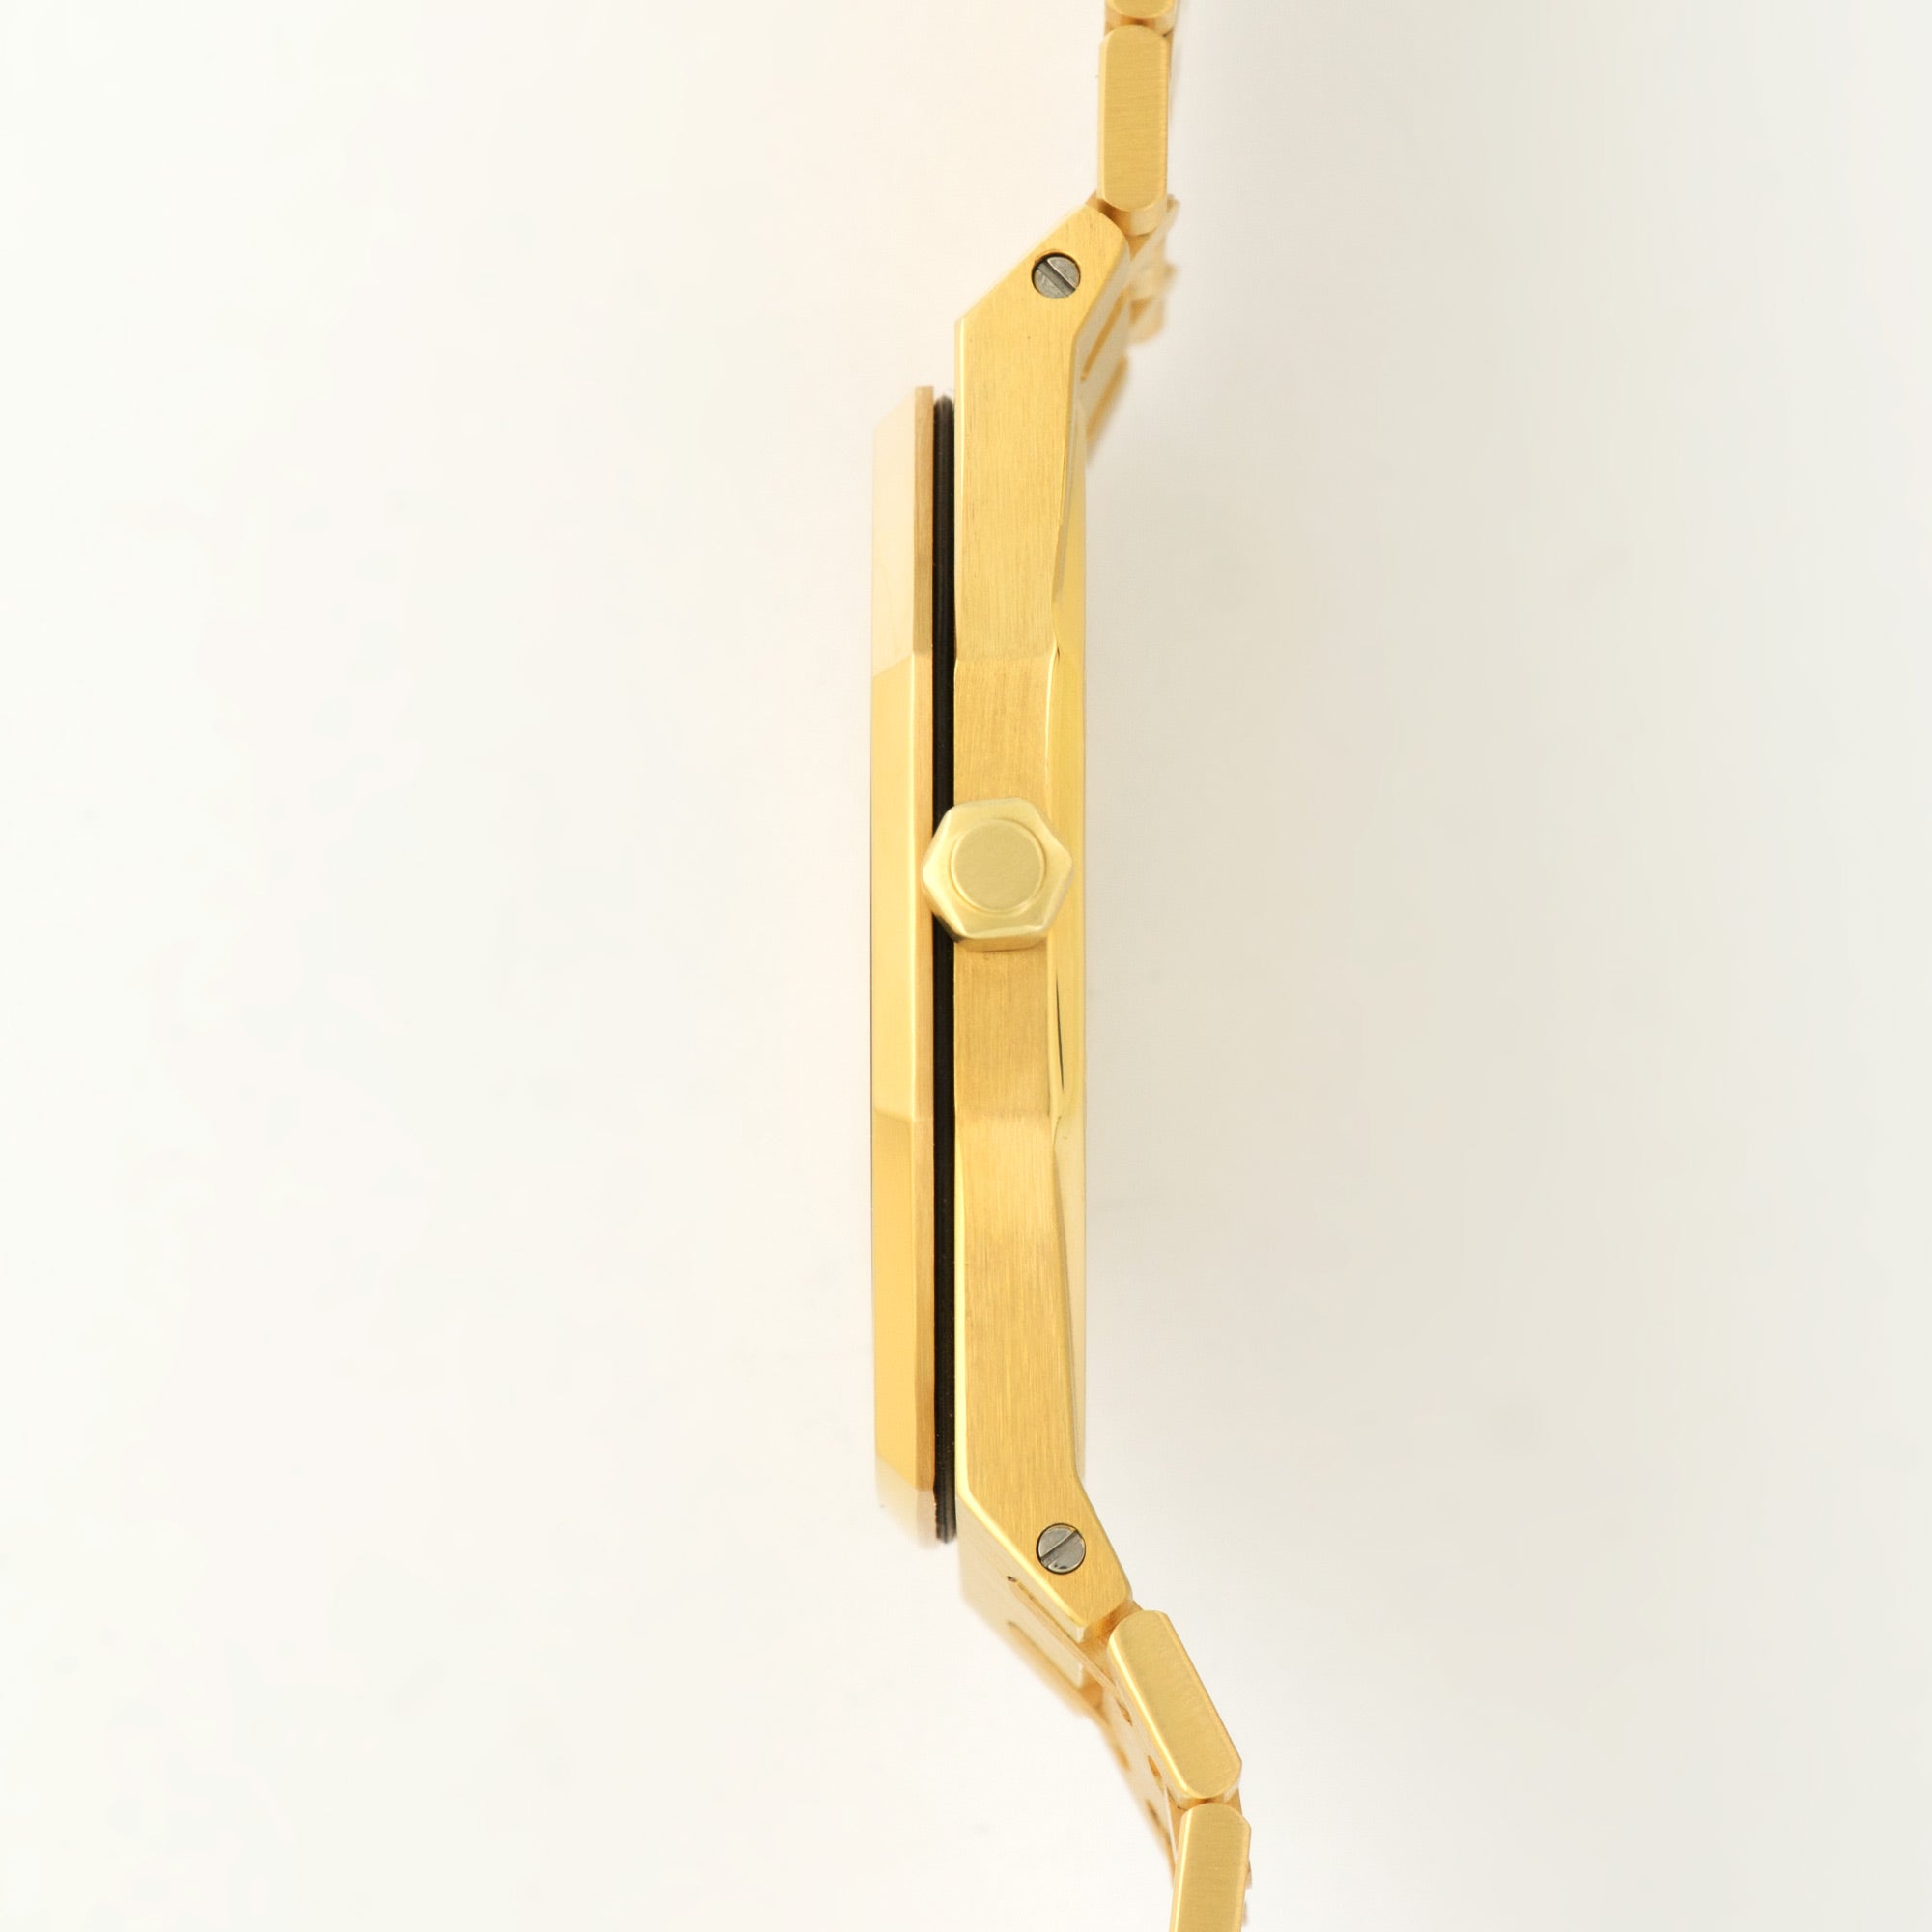 Audemars Piguet - Audemars Piguet Yellow Gold Royal Oak Jumbo Ref. 5402 - The Keystone Watches